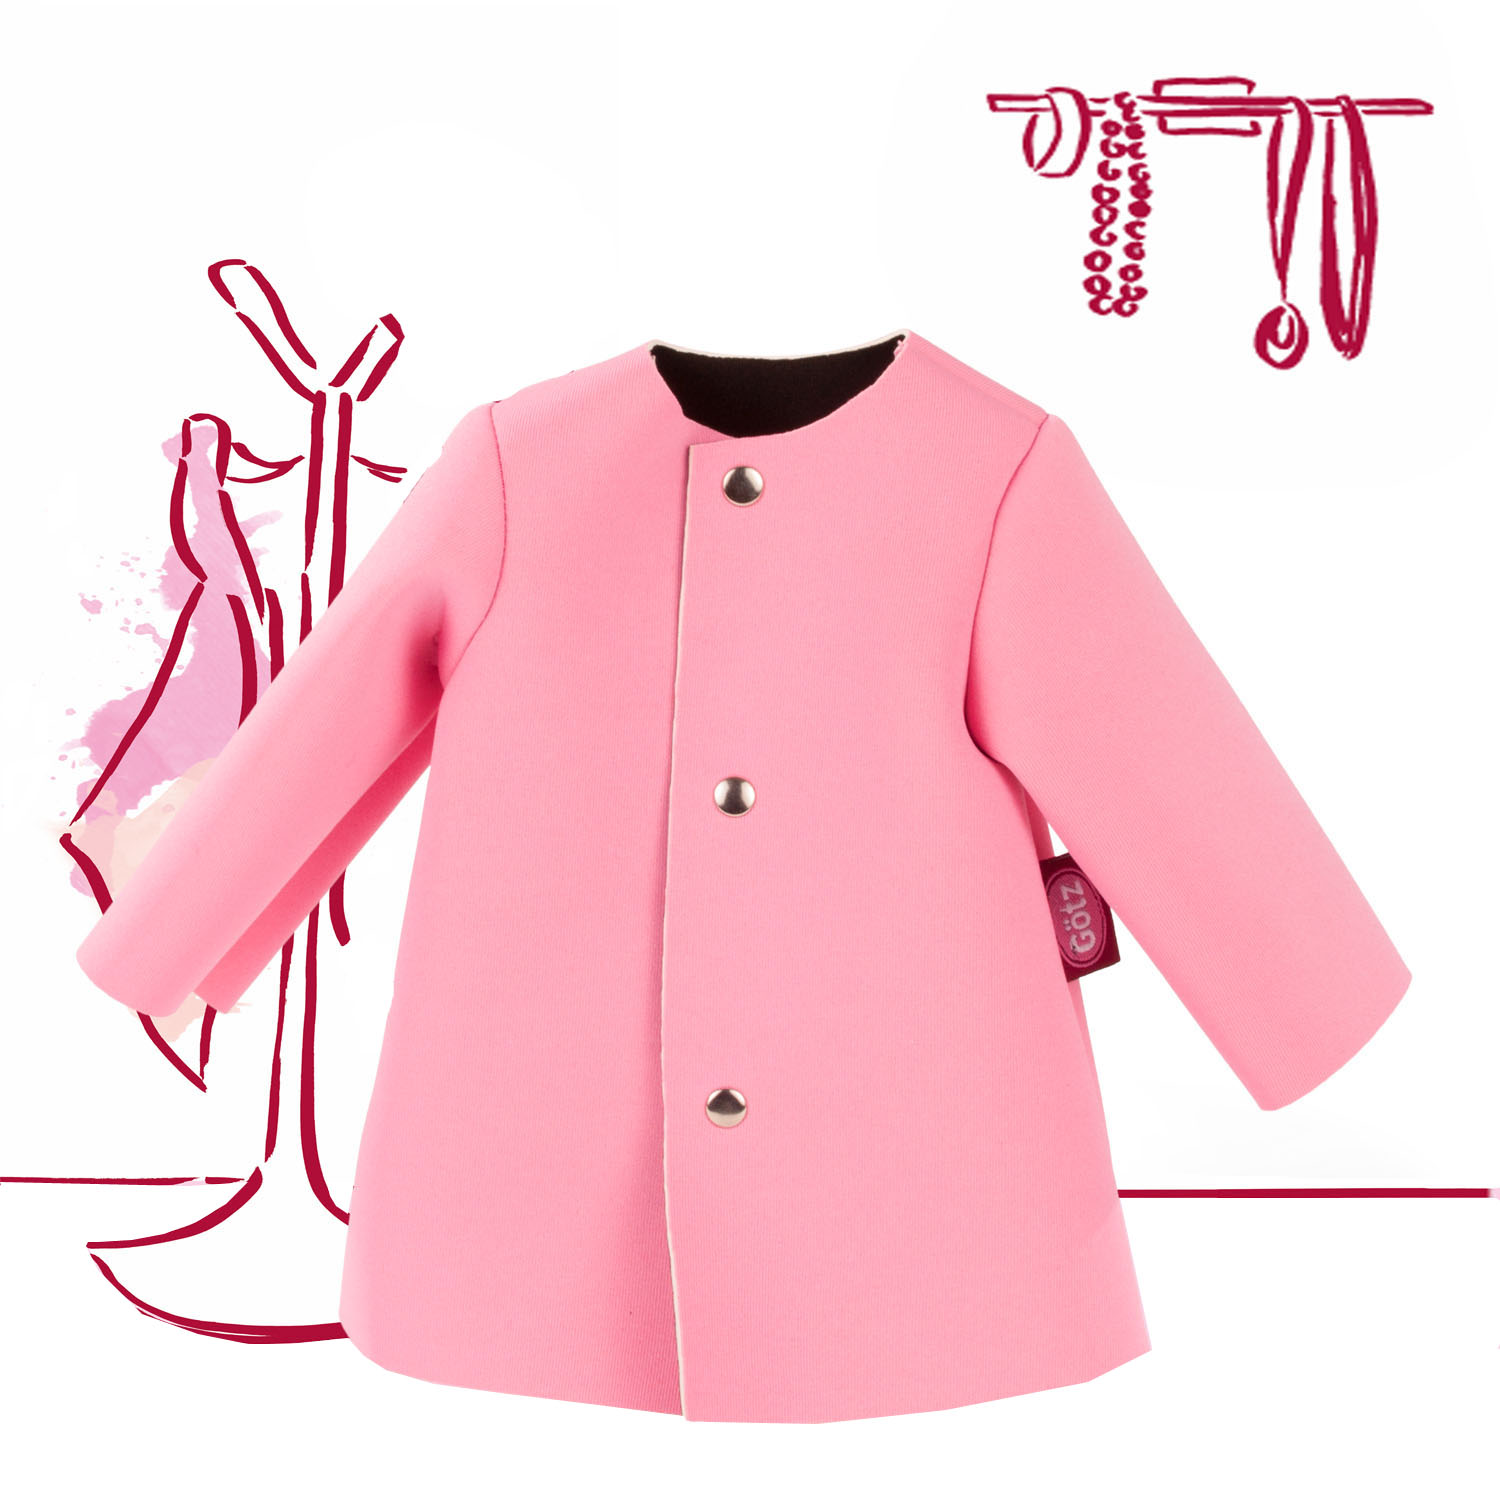 Mantel pink 